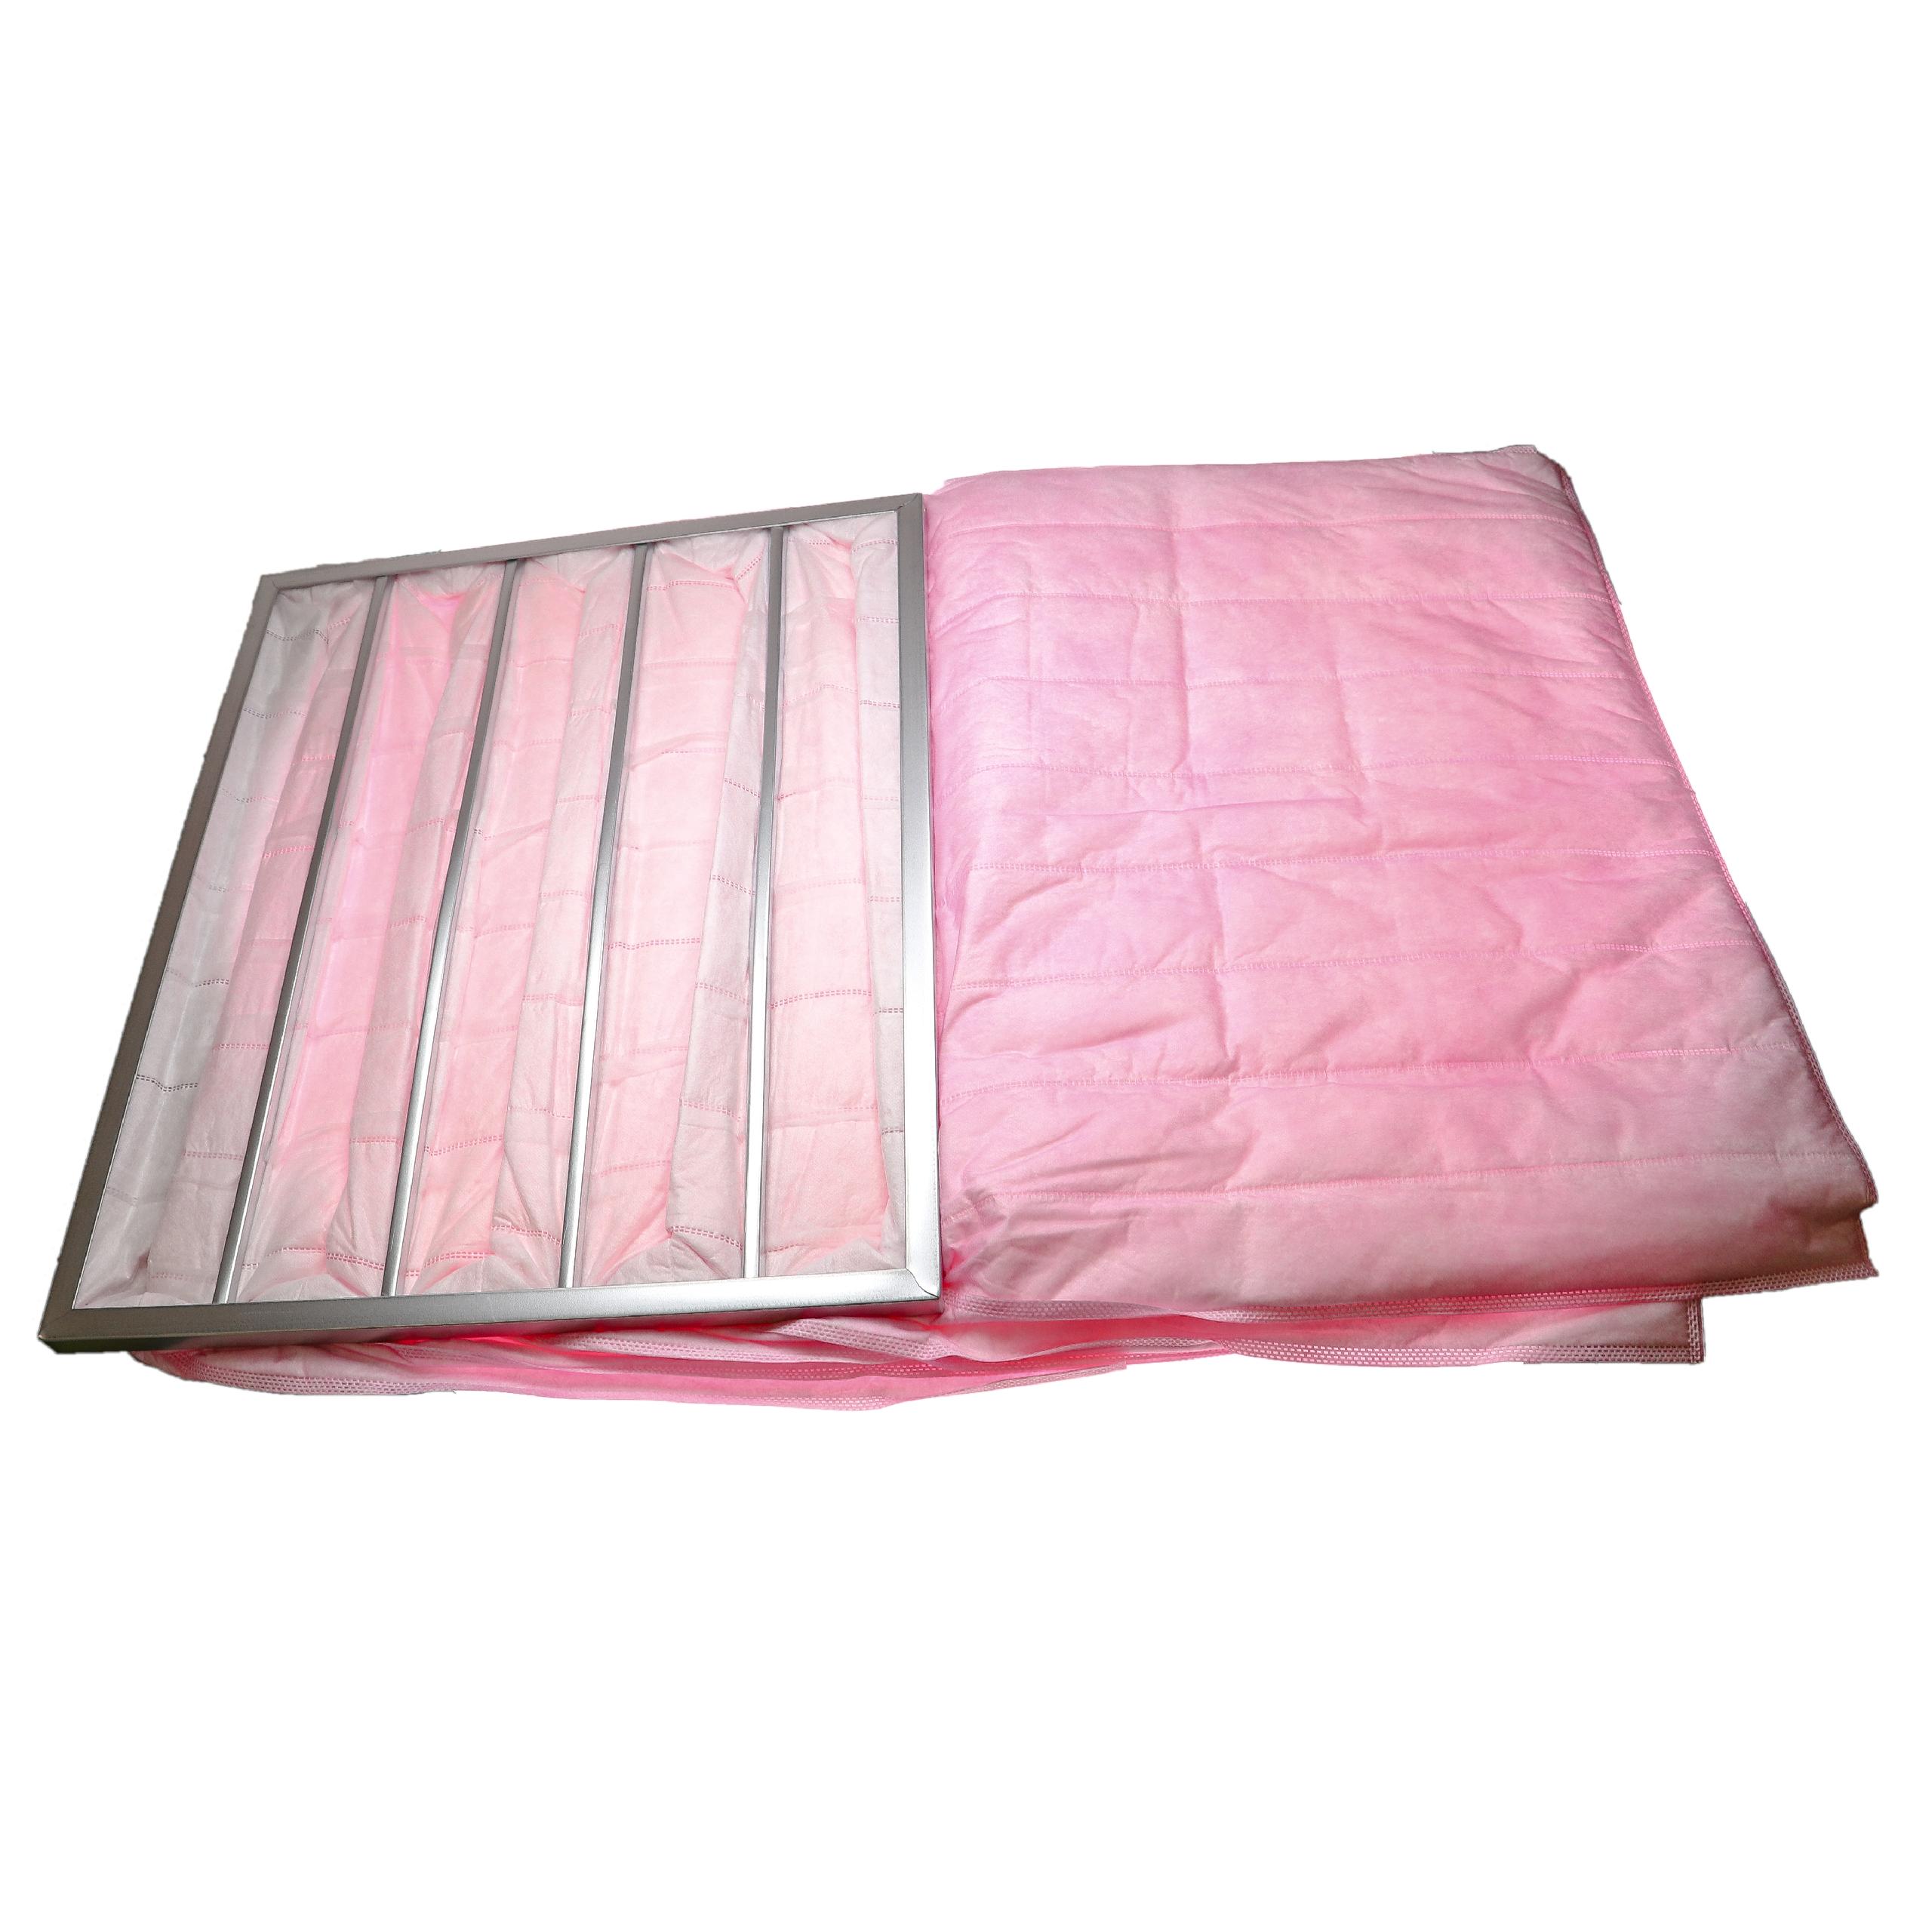 Taschenfilter F7 passend für Klimaanlagen, Lüftungsanlagen - 60 x 49 x 59,2 cm